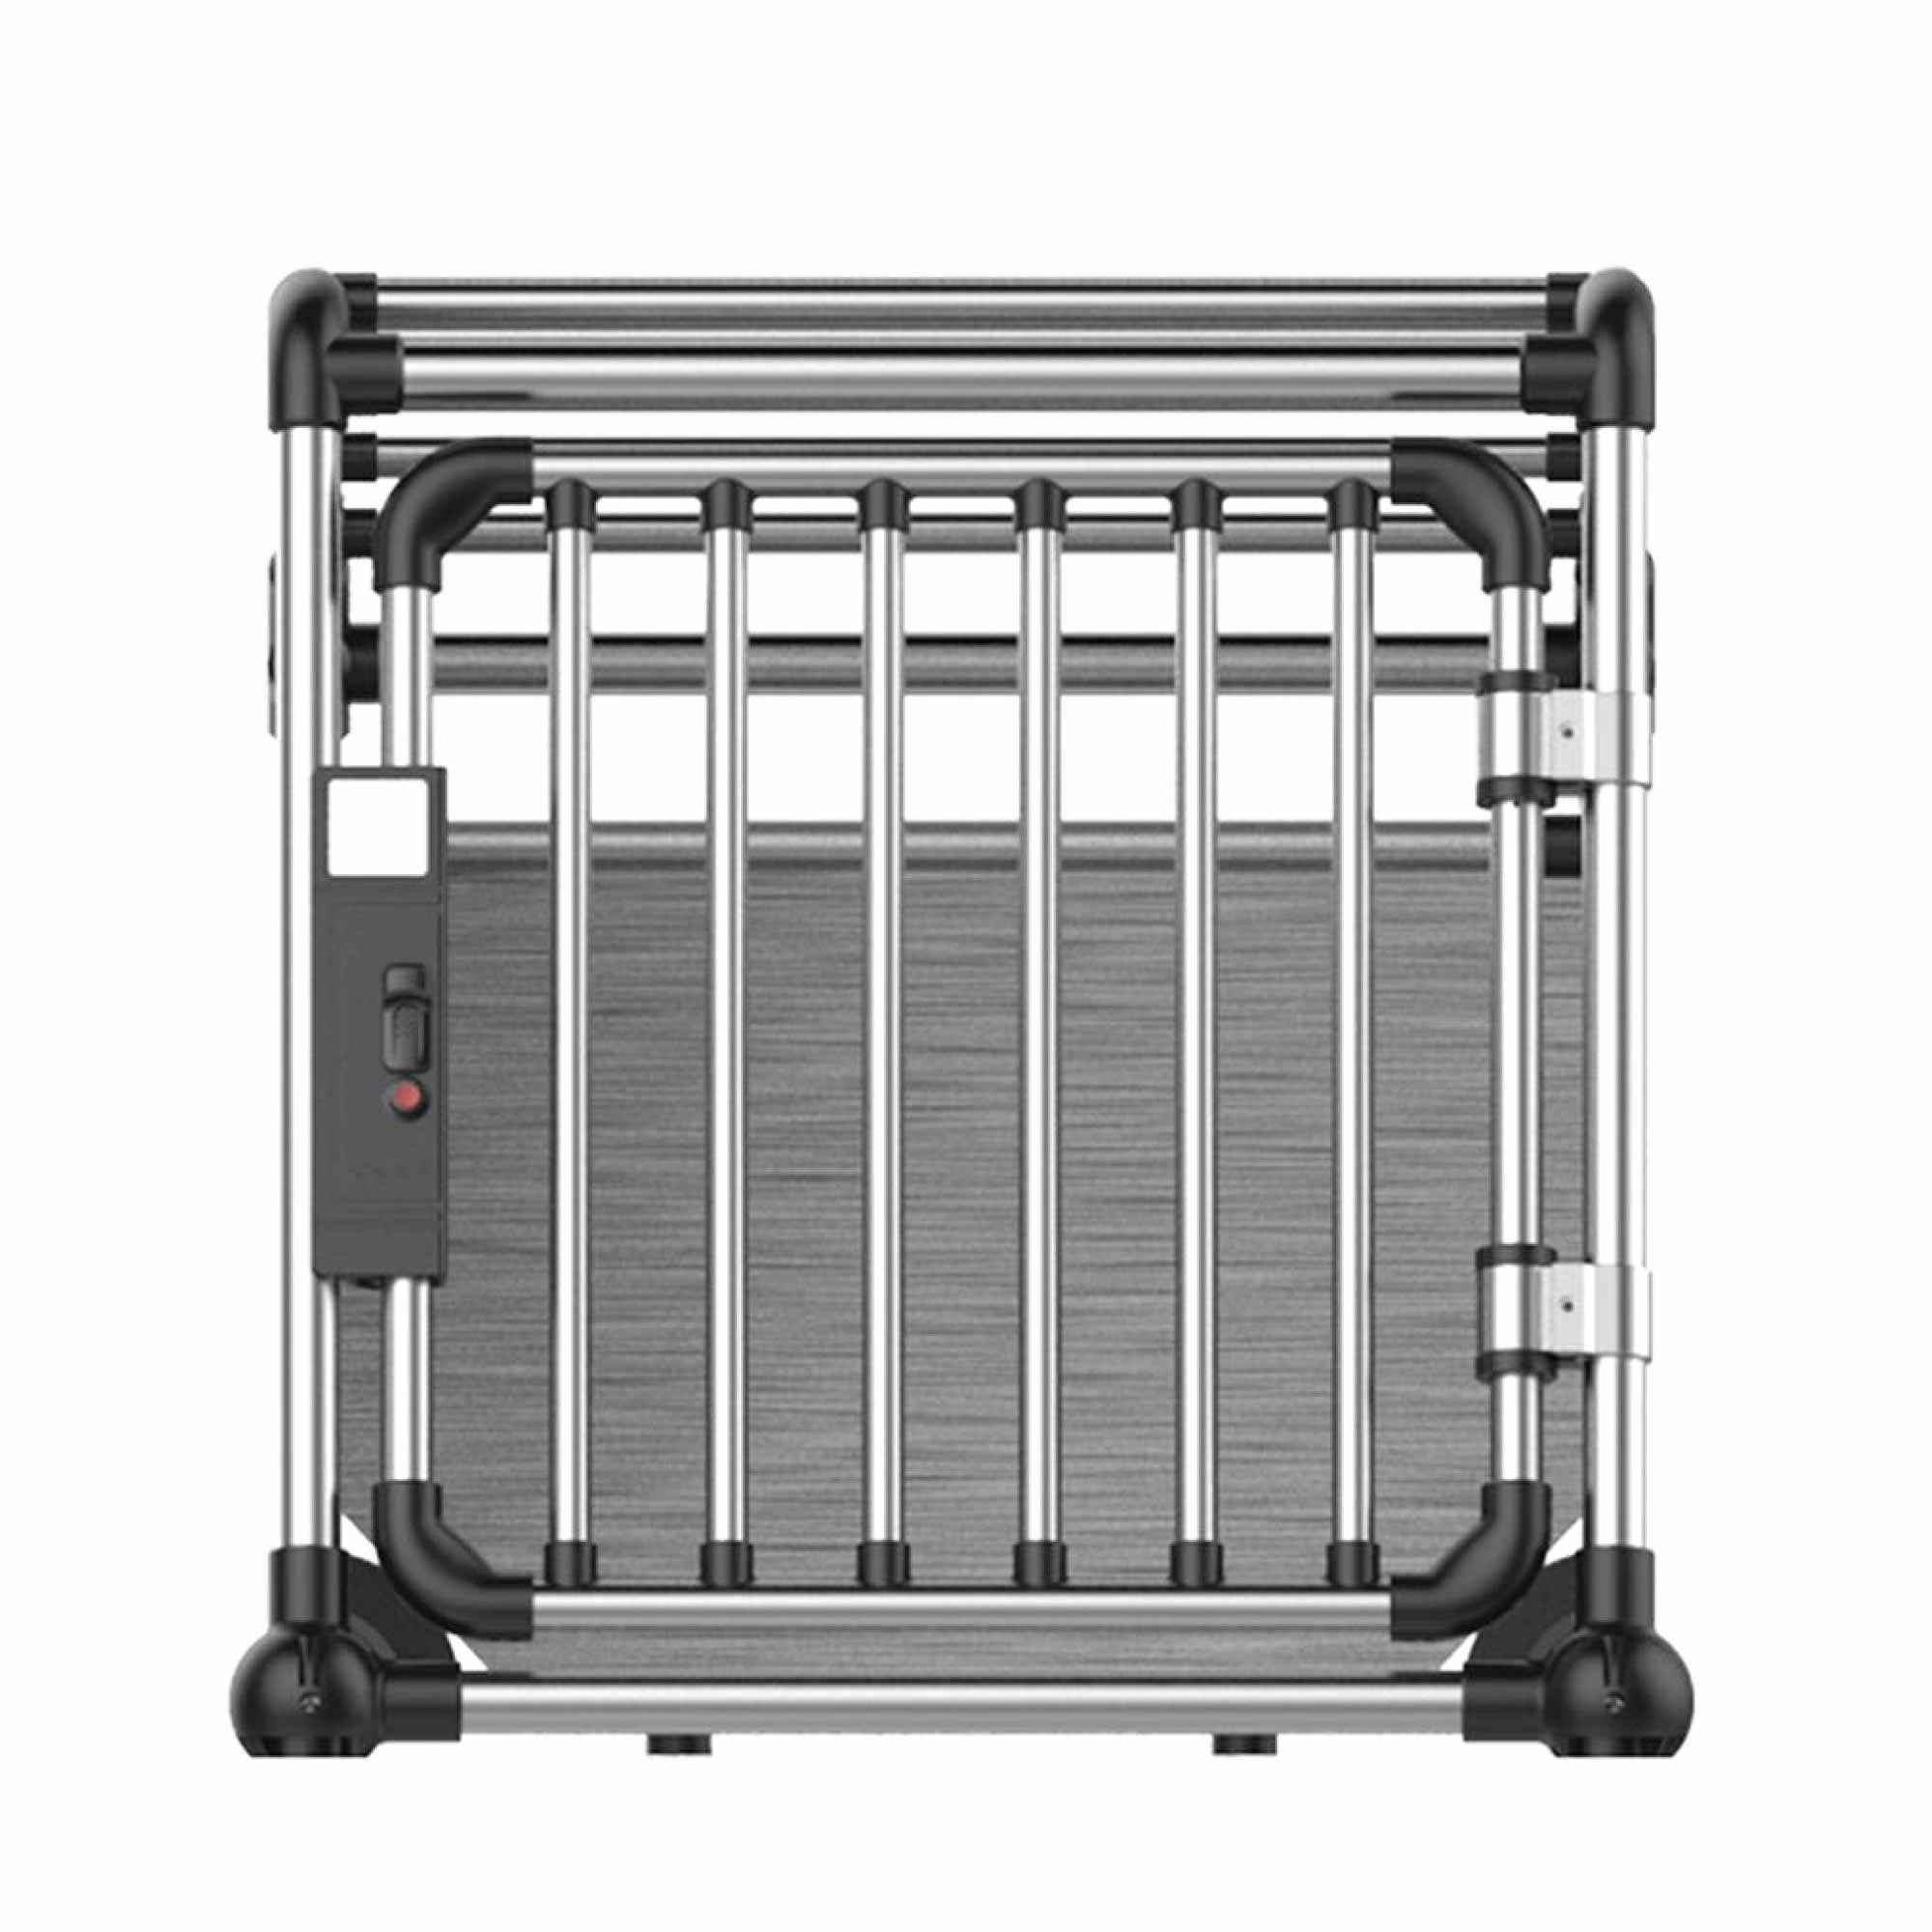 Premium Aluminium Dog Travel Crate - Large Pet Transport Cage